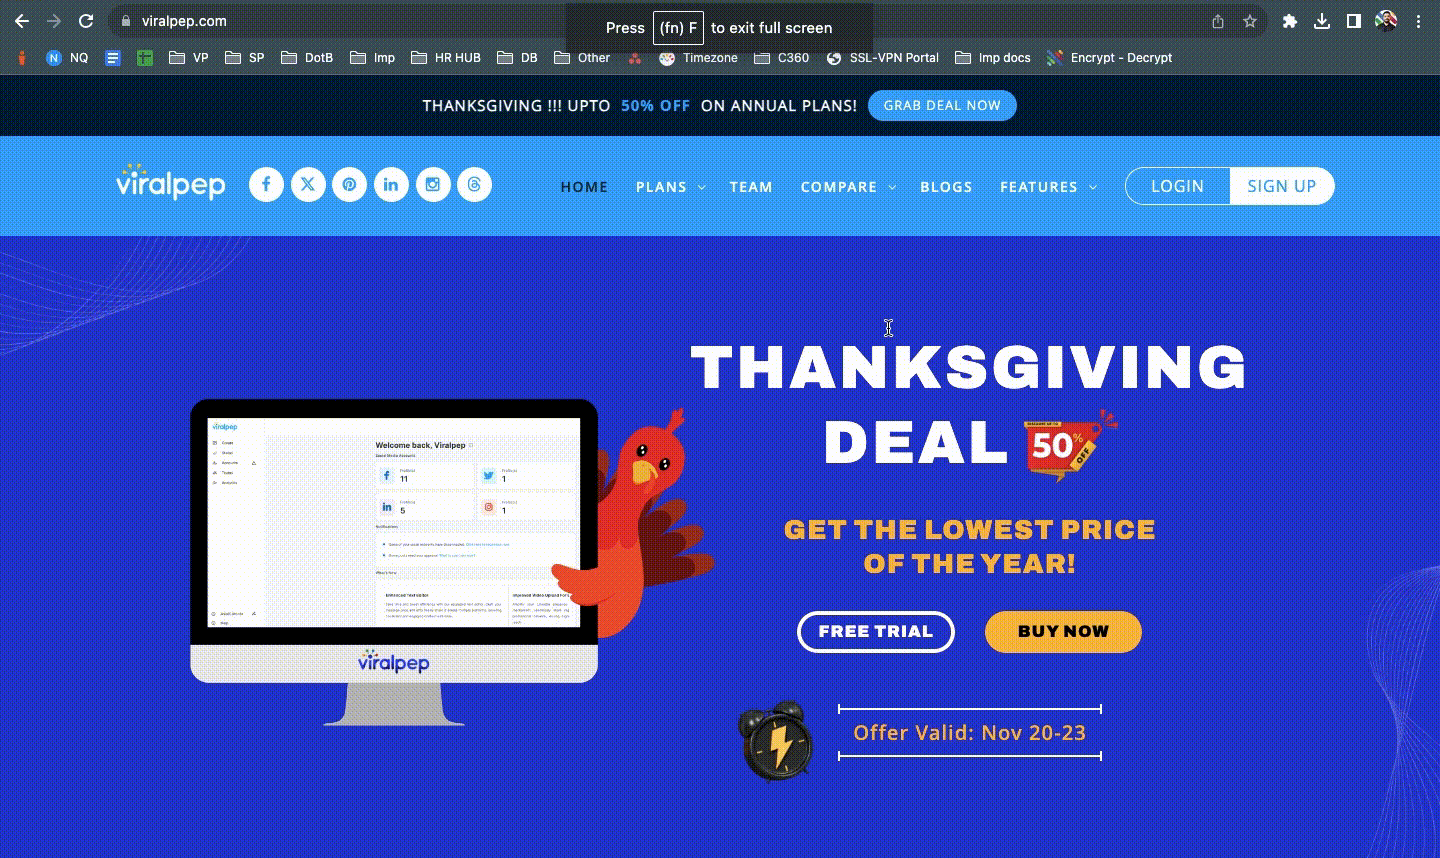 Viralpep's Thanksgiving discounts